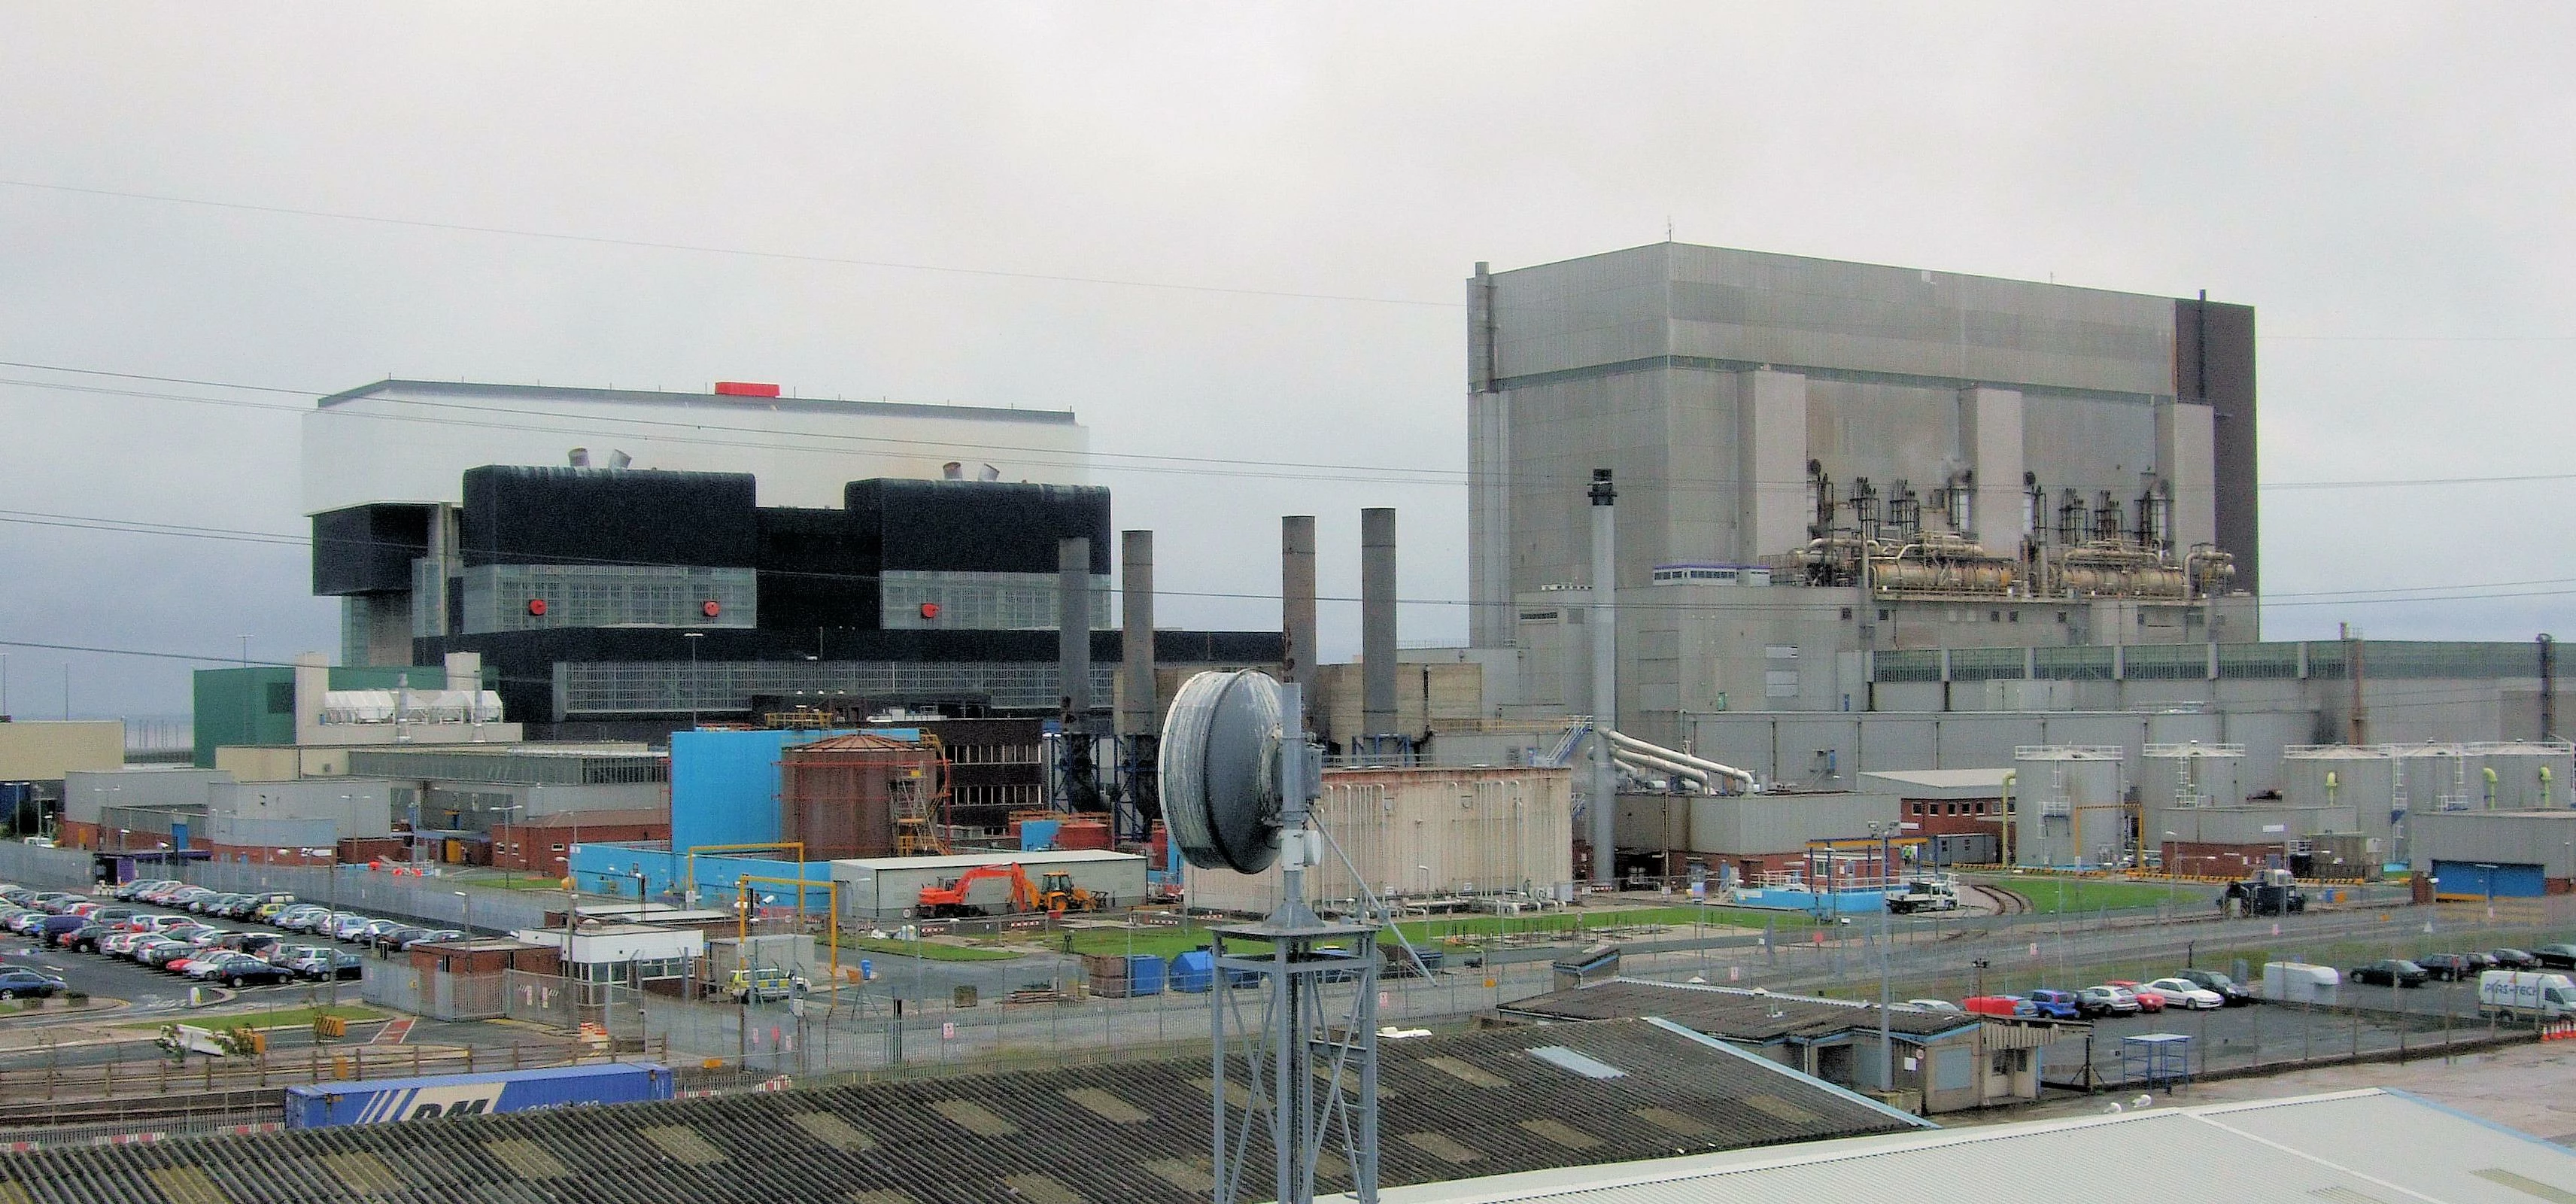 Heysham Nuclear Power Station. Image: Jim Linwood - Wikimedia Commons